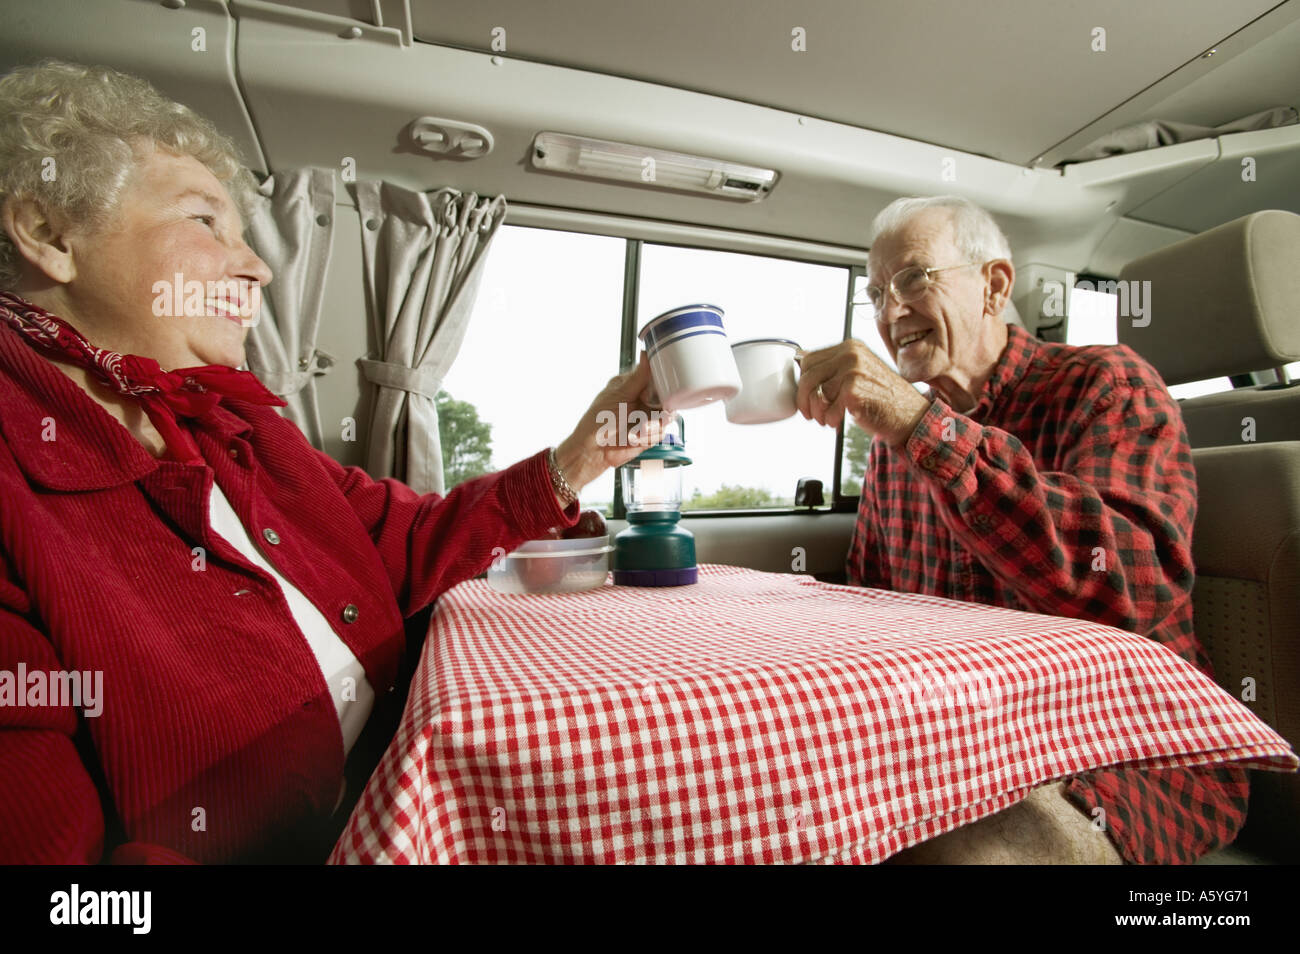 Senior couple enjoying the morning Stock Photo